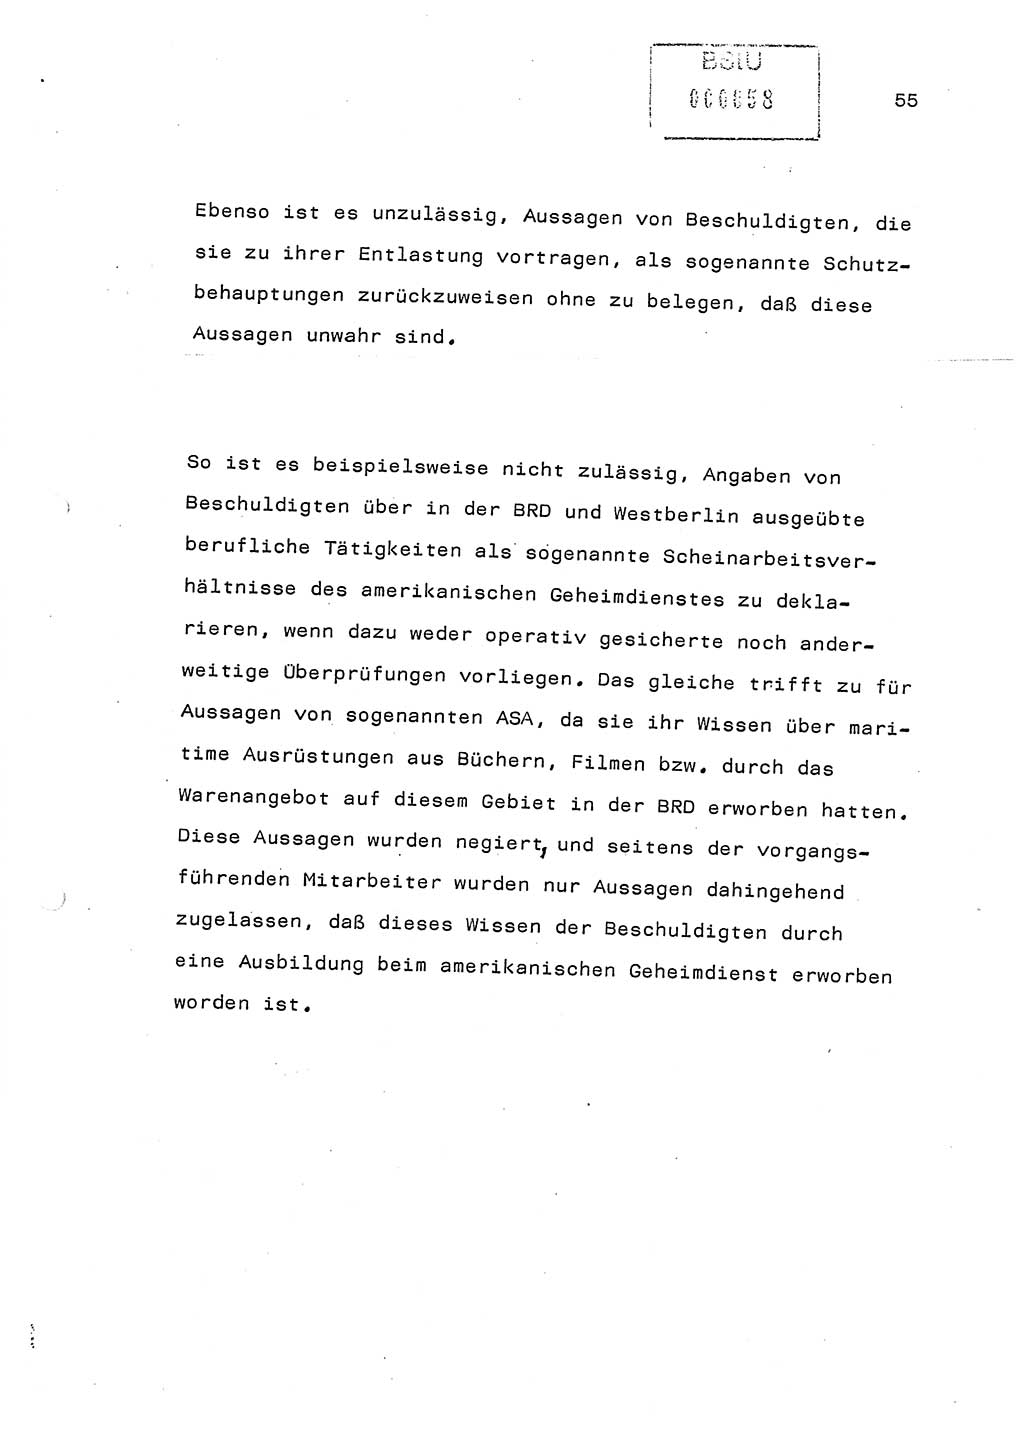 Referat (Generaloberst Erich Mielke) auf der Zentralen Dienstkonferenz am 24.5.1979 [Ministerium für Staatssicherheit (MfS), Deutsche Demokratische Republik (DDR), Der Minister], Berlin 1979, Seite 55 (Ref. DK DDR MfS Min. /79 1979, S. 55)